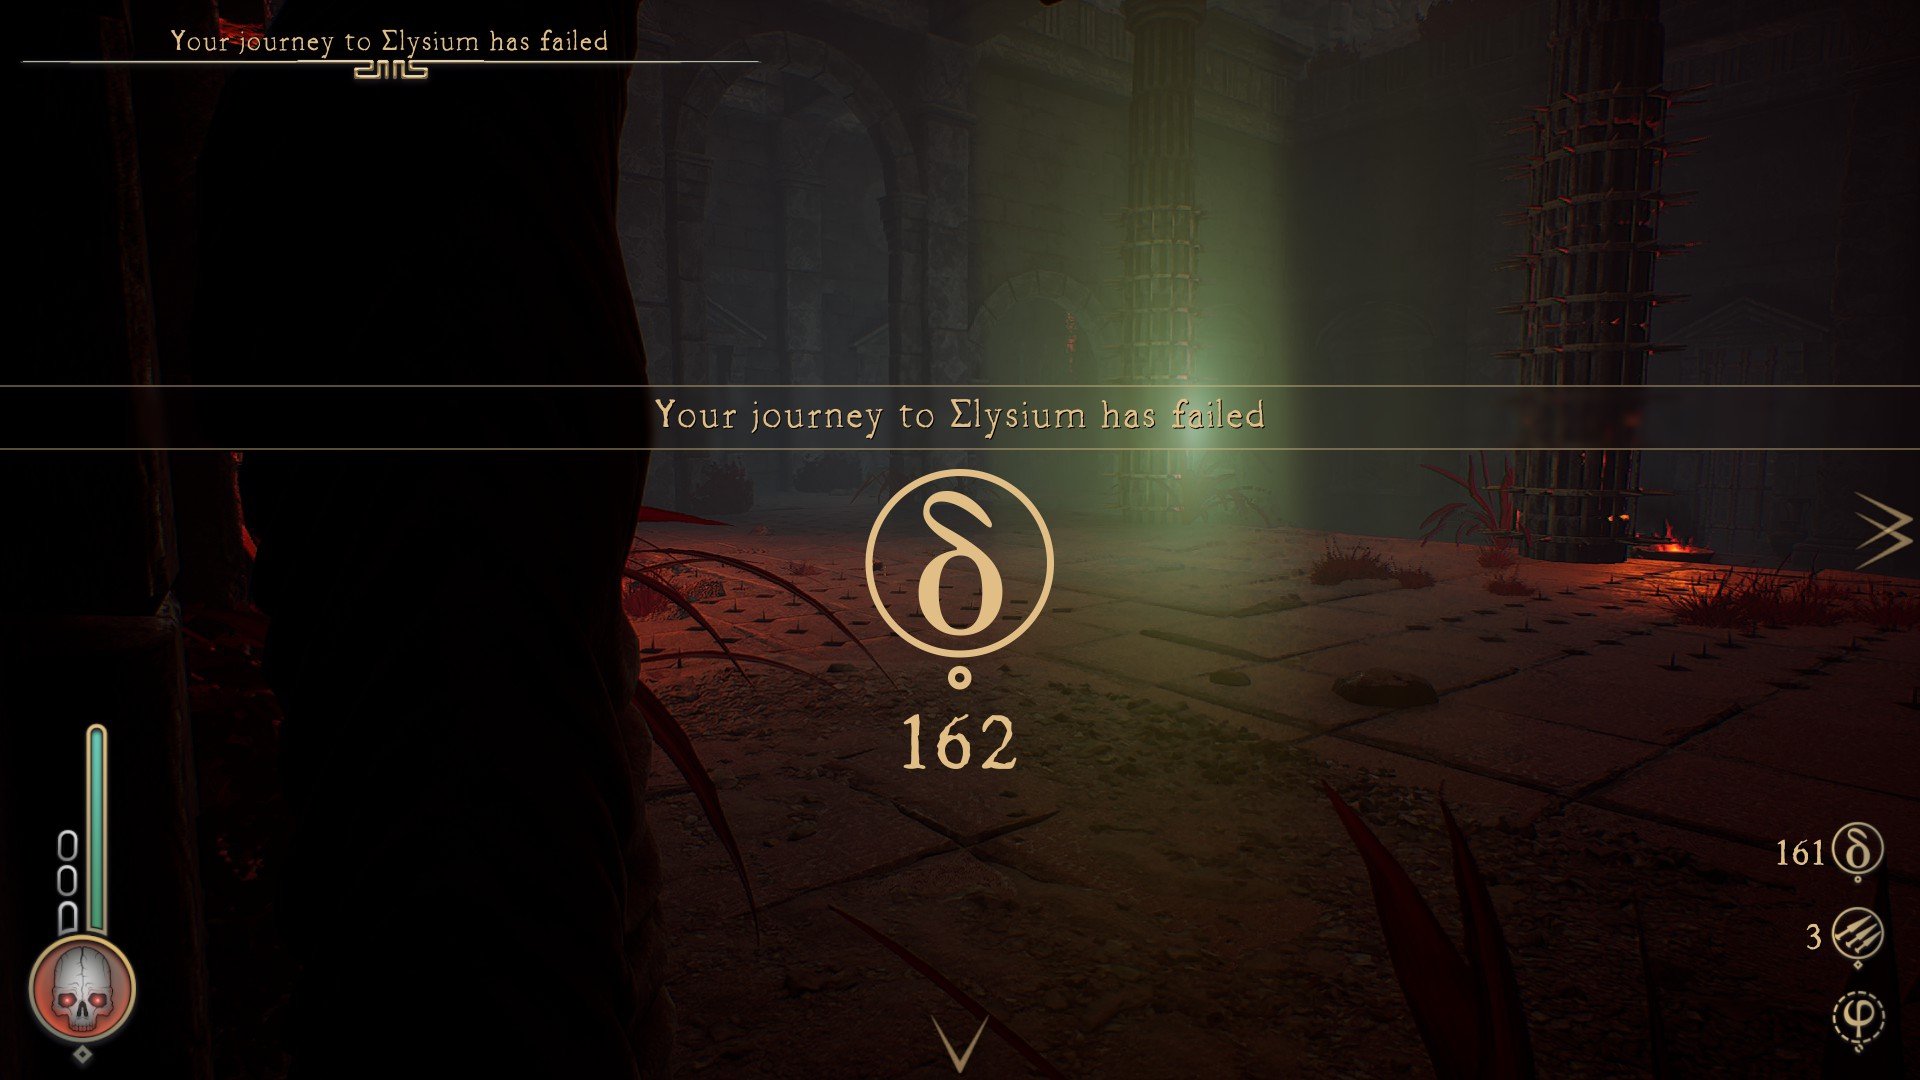 Perish - Elysium Death Game Over Screen